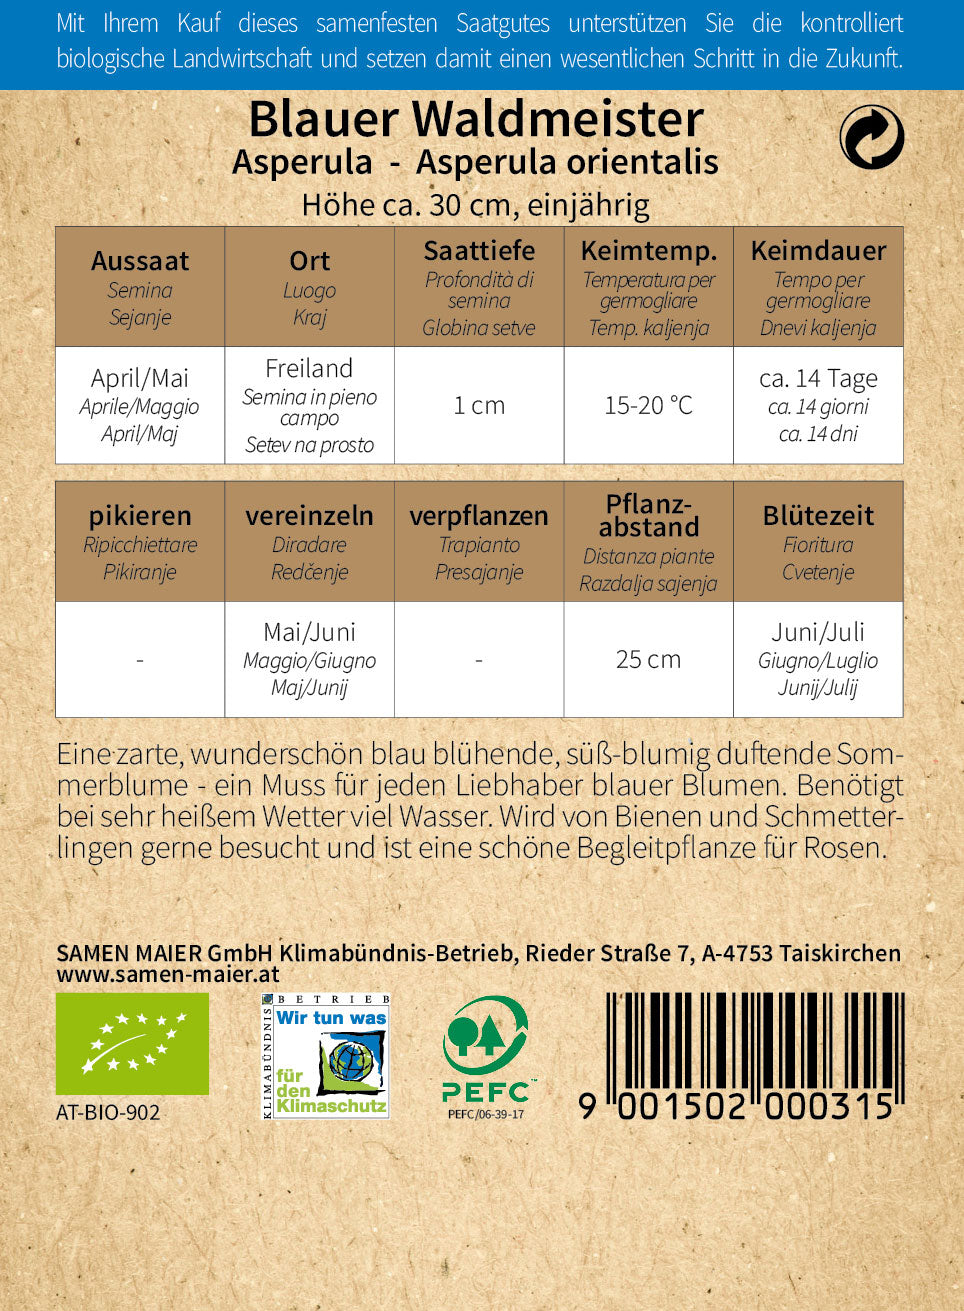 Blauer Waldmeister | BIO Heilpflanzensamen von Samen Maier